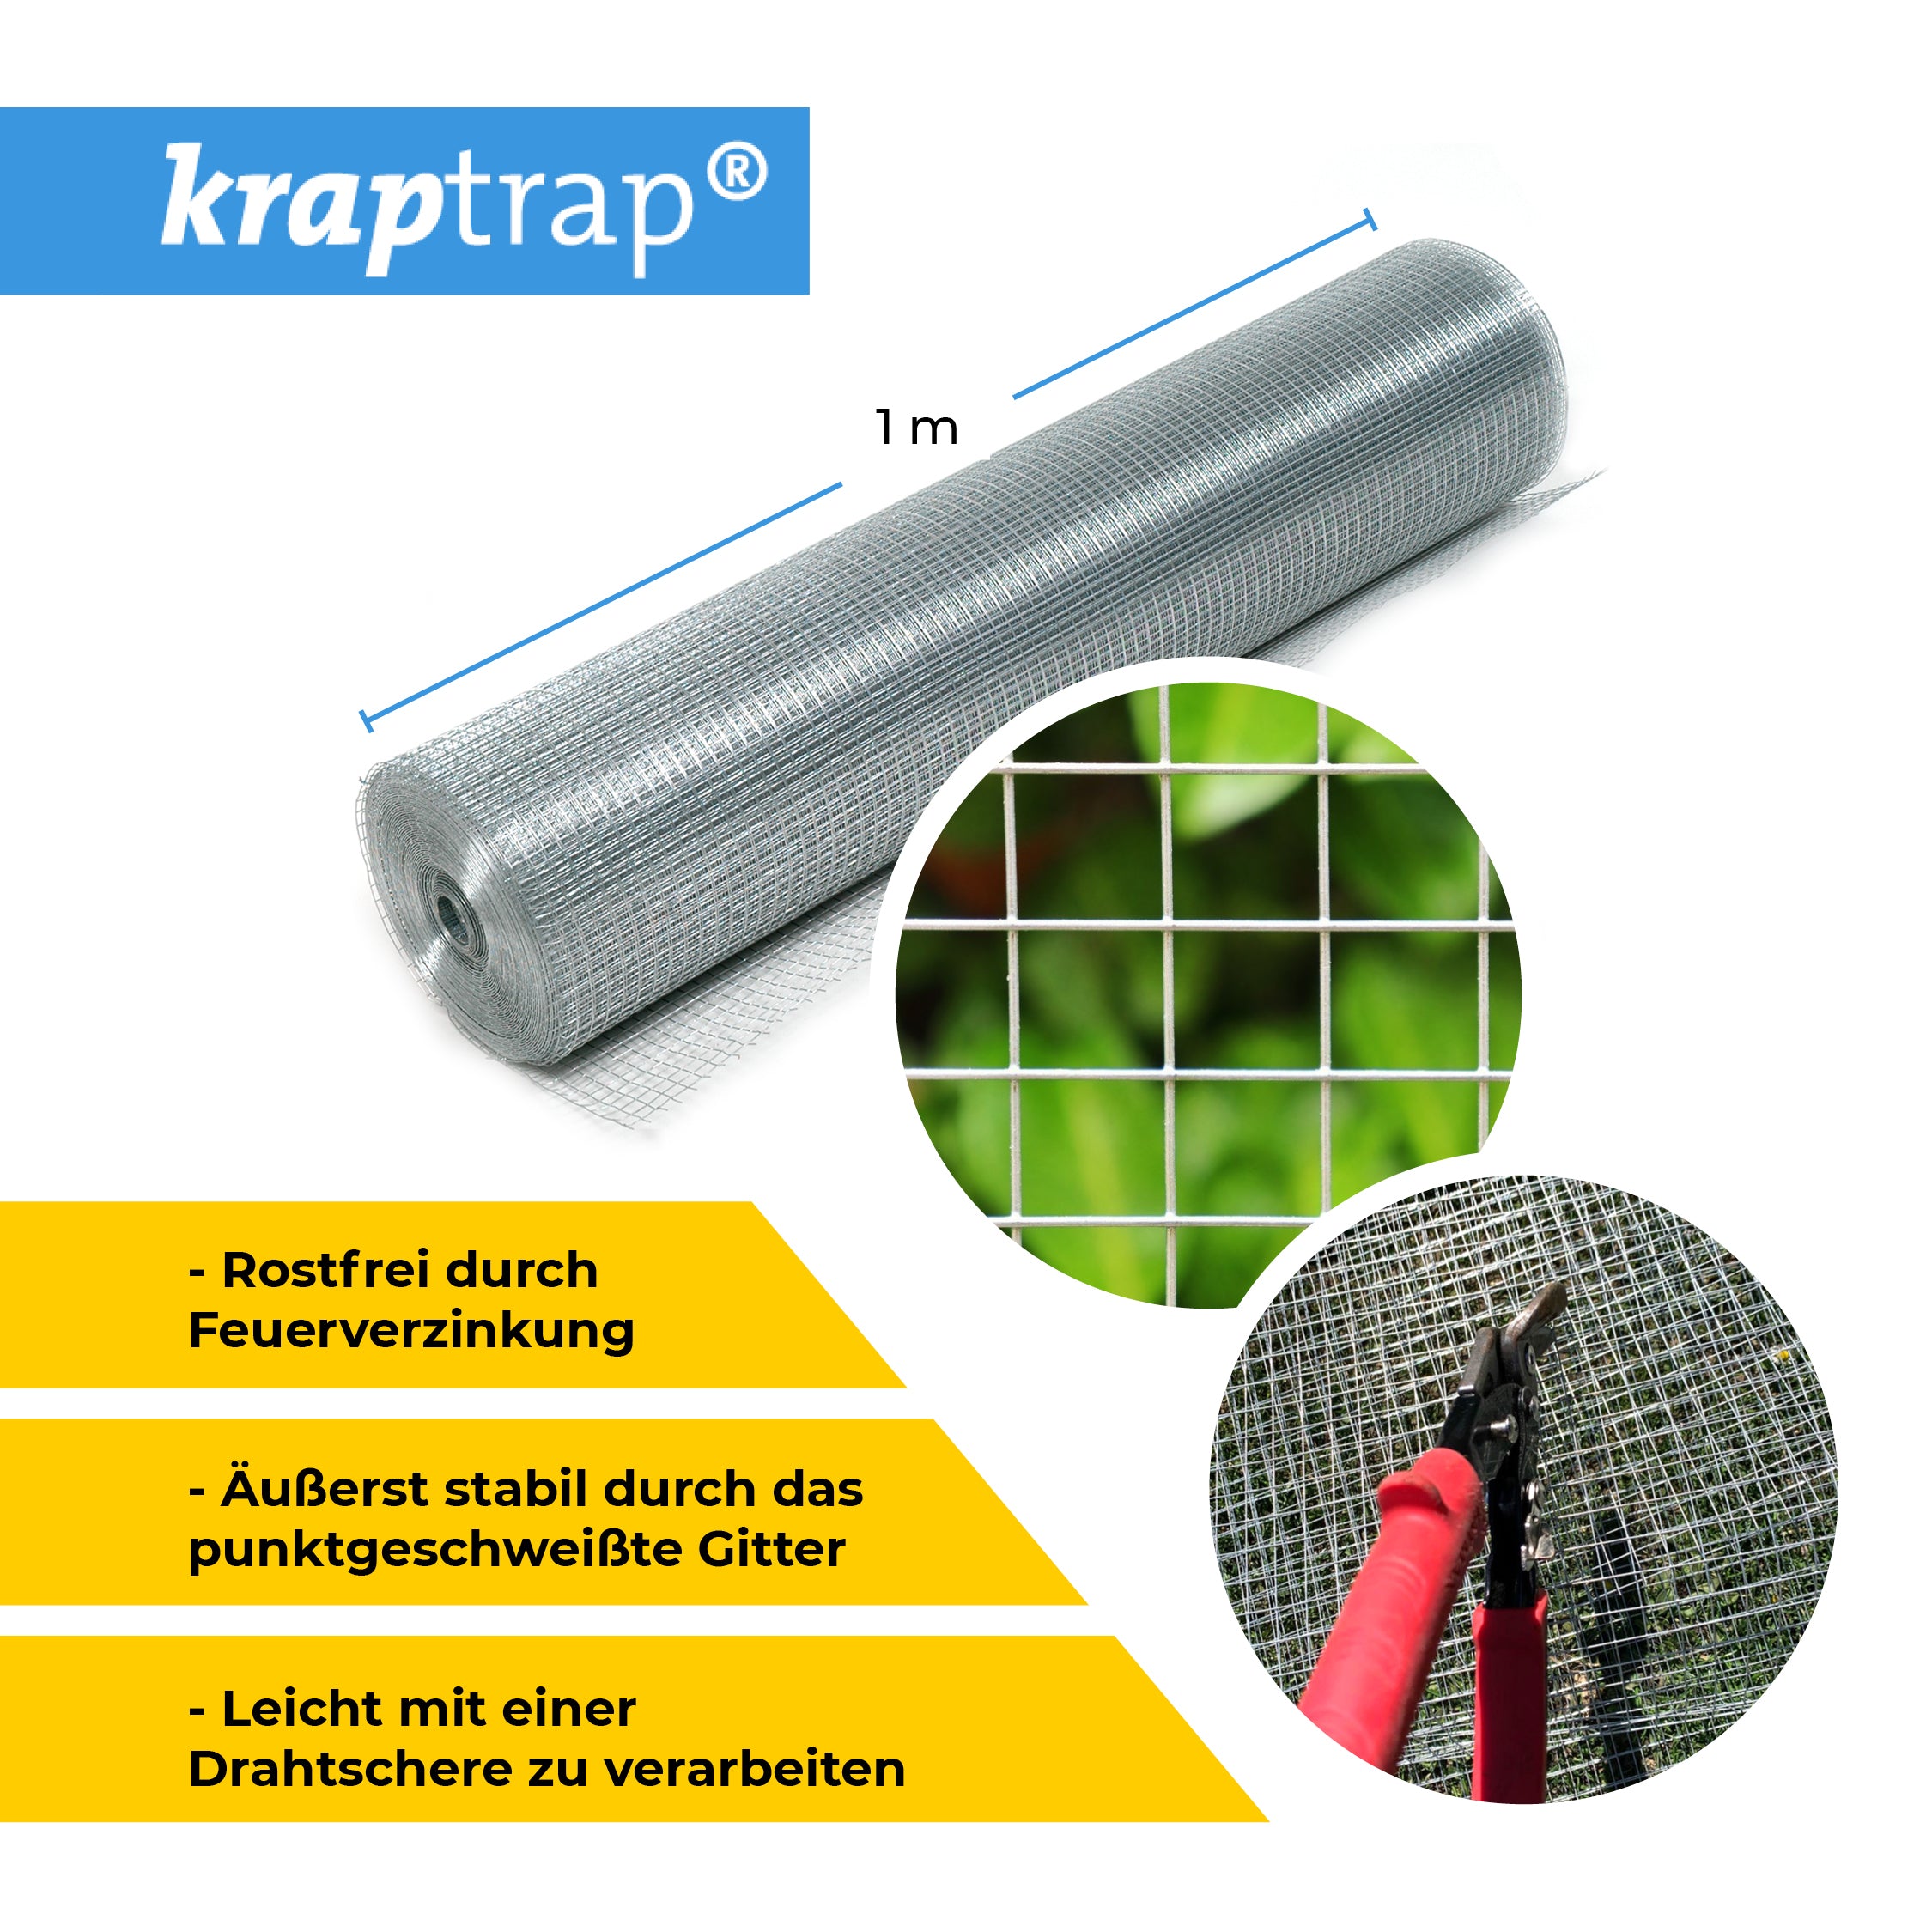 Kraptrap® Volierendraht Drahtgitter 12,7 mm Masche, 100 cm breit, 1,05mm Drahtstärke